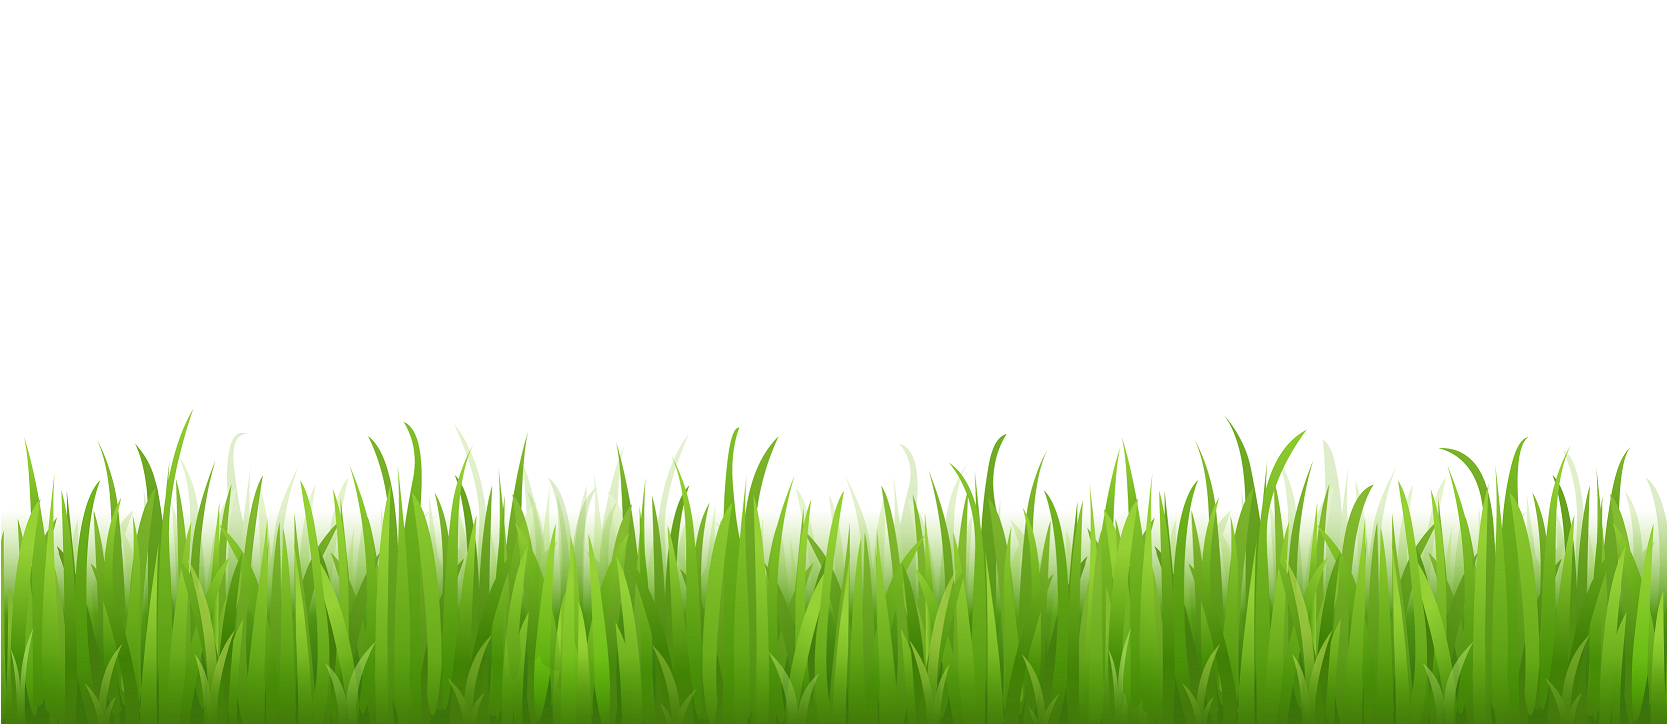 Grüner Gras-PNG-Bildhintergrund